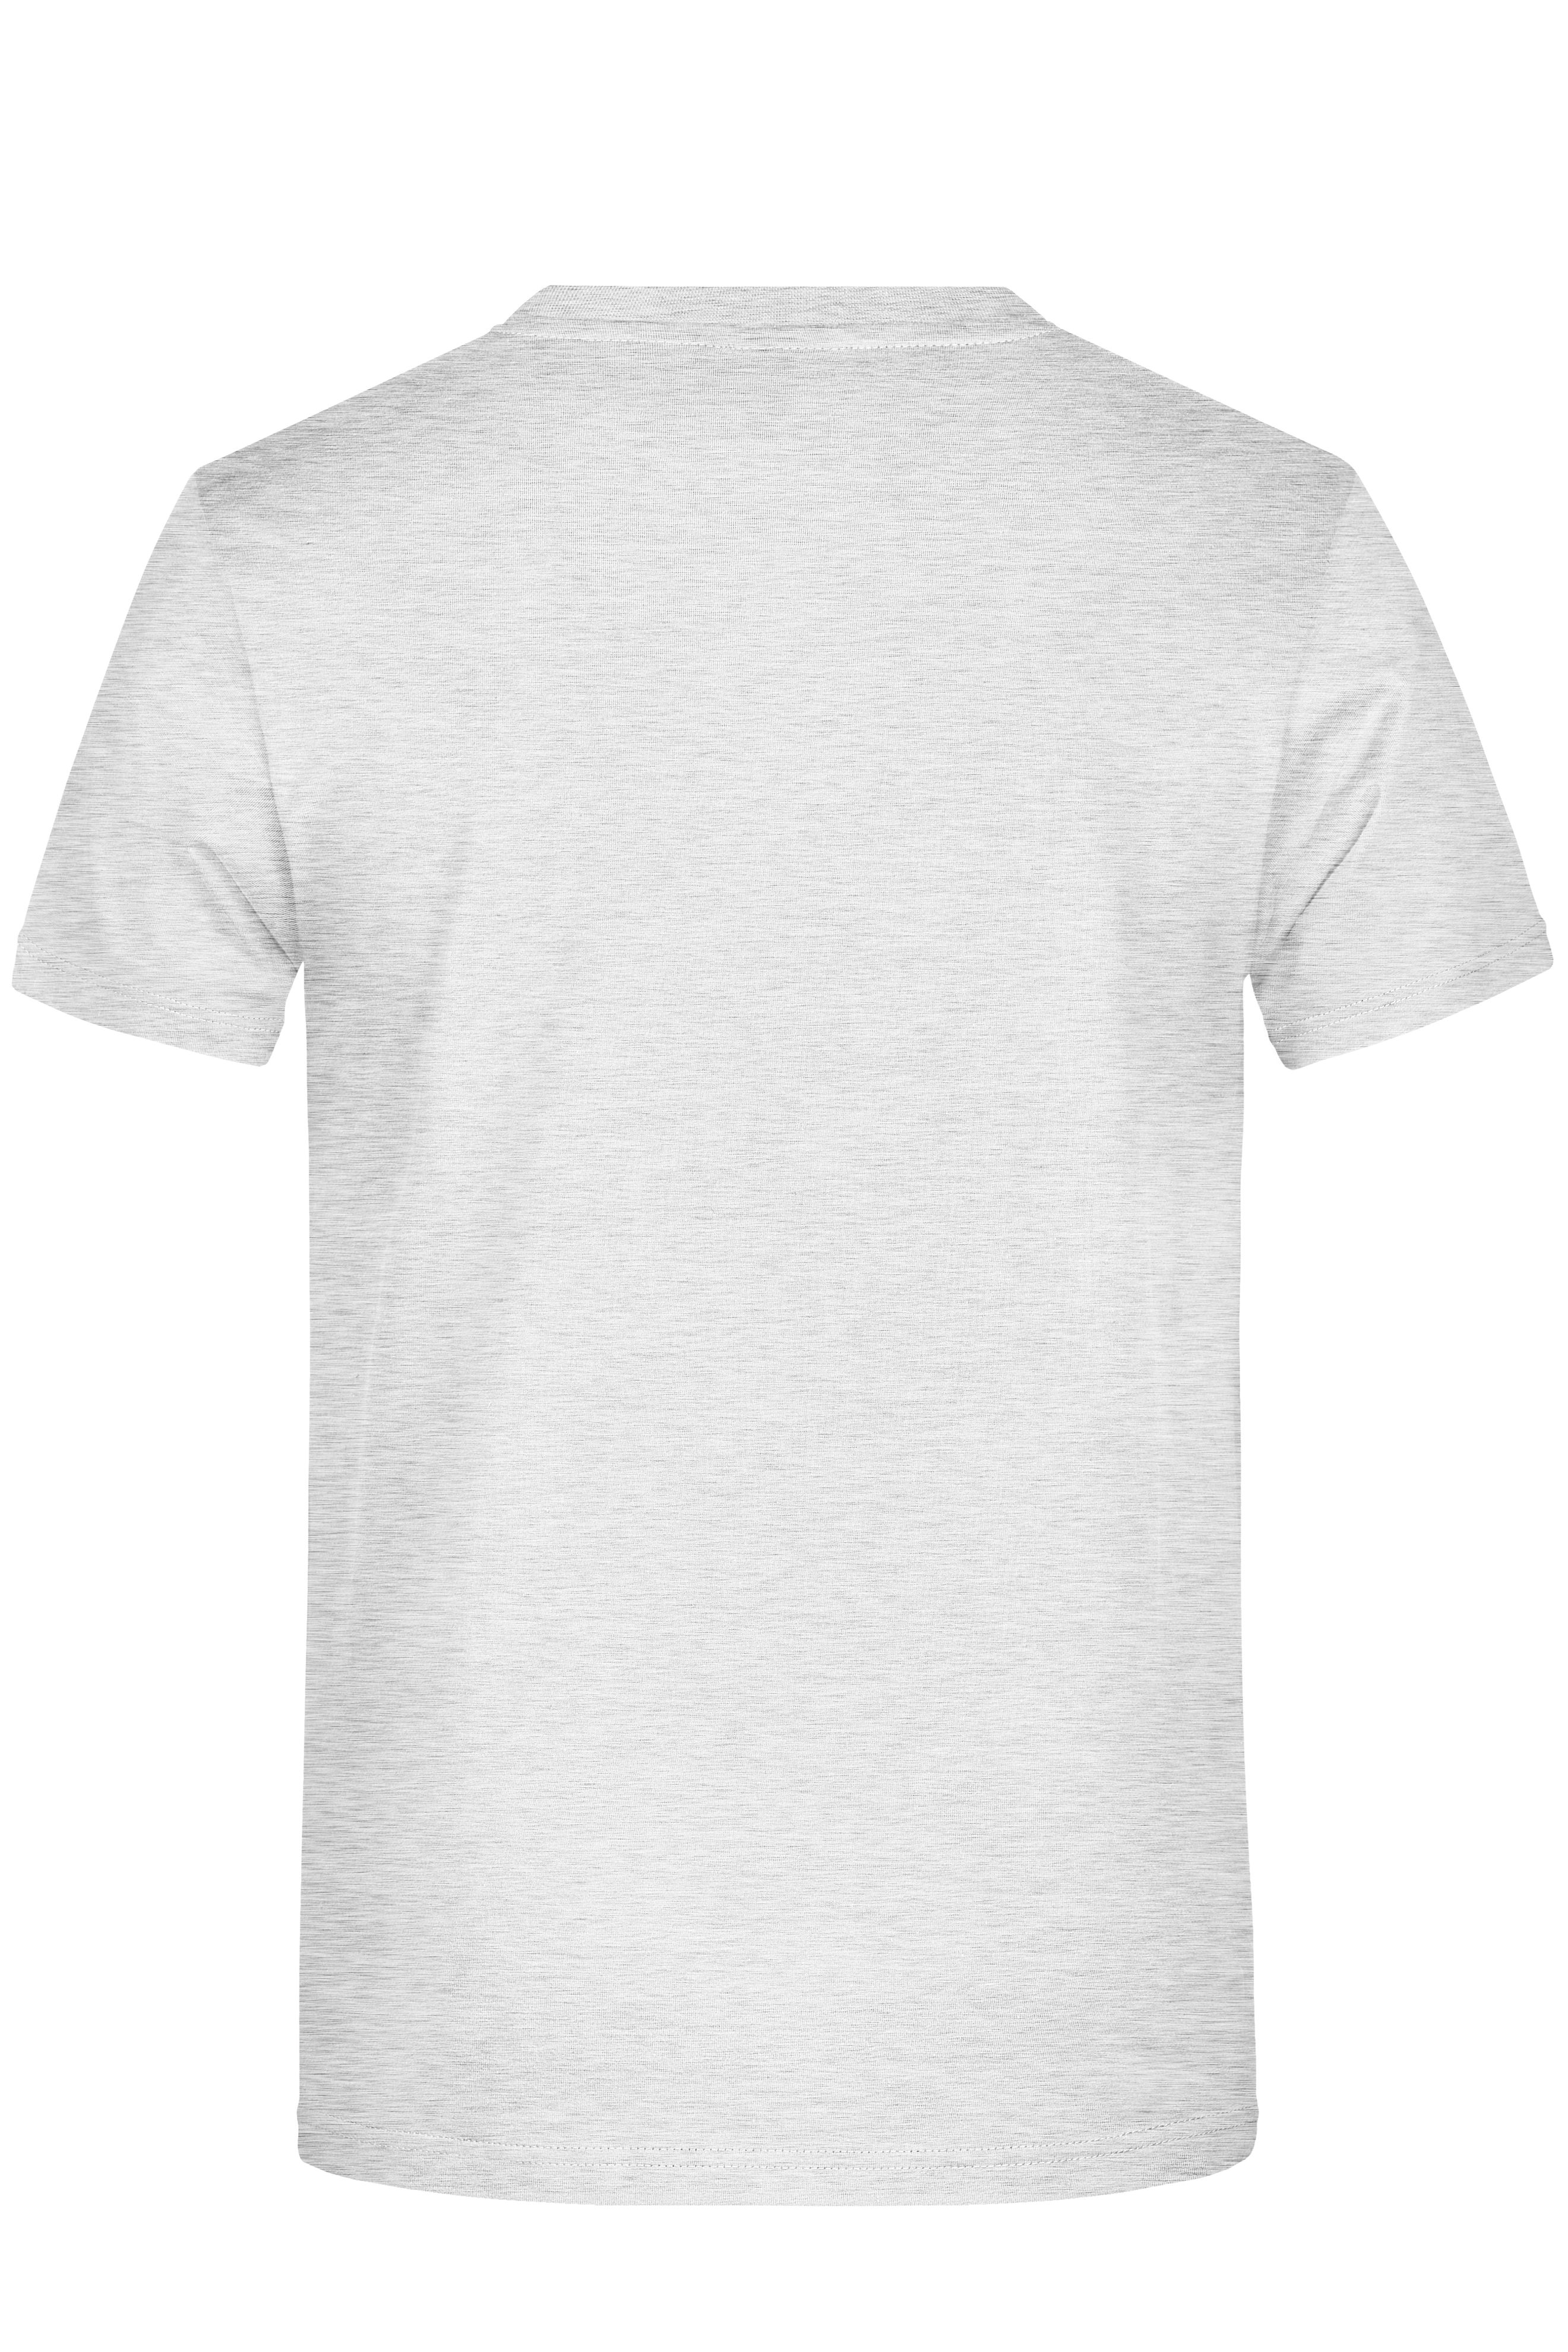 Promo-T Man 150 JN797 Klassisches T-Shirt